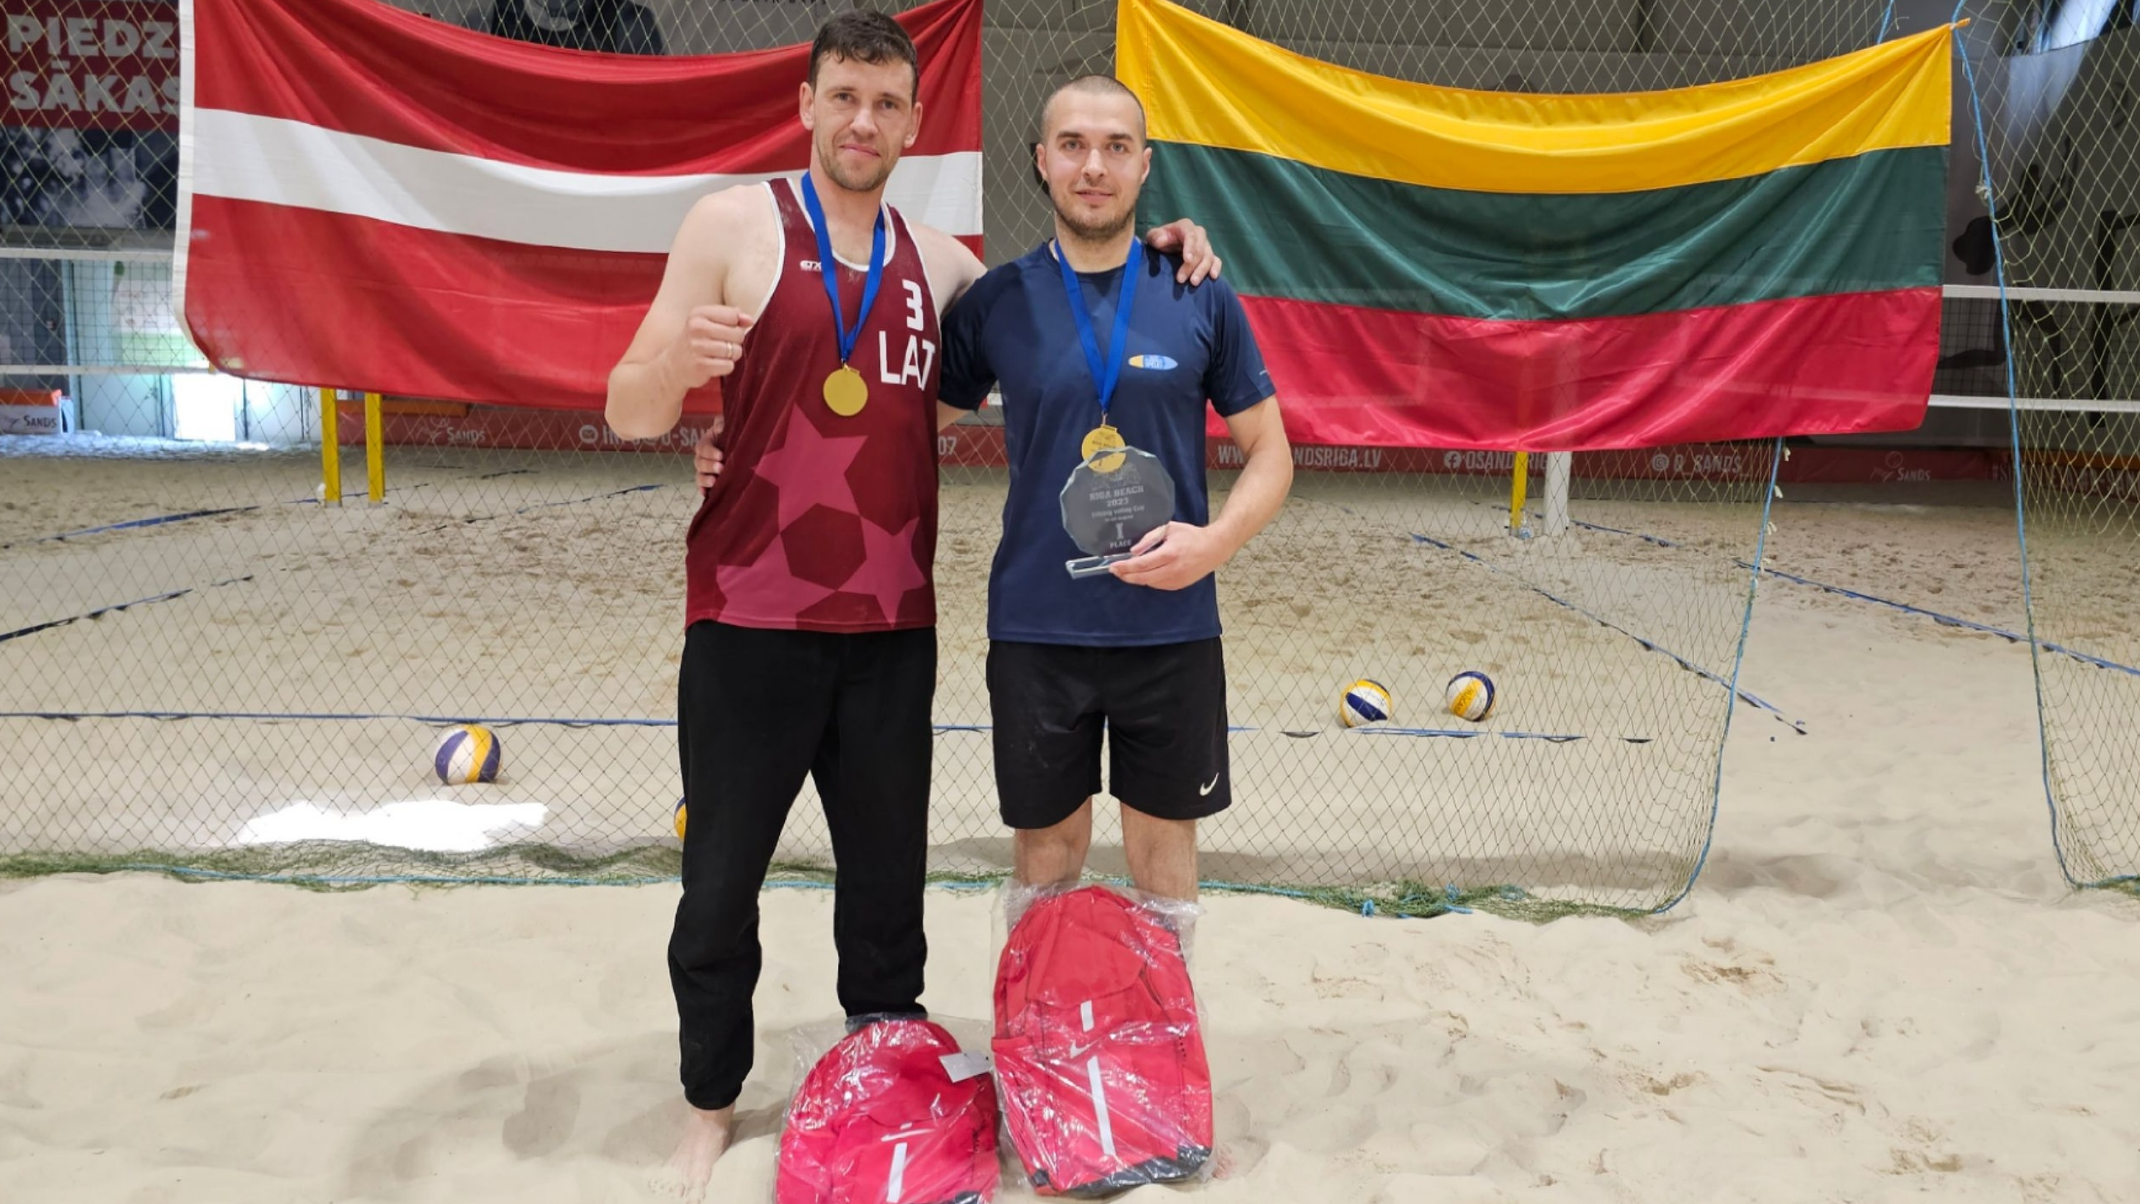 Divas Latvijas sēdvolejbola komandas izcīna zeltu!